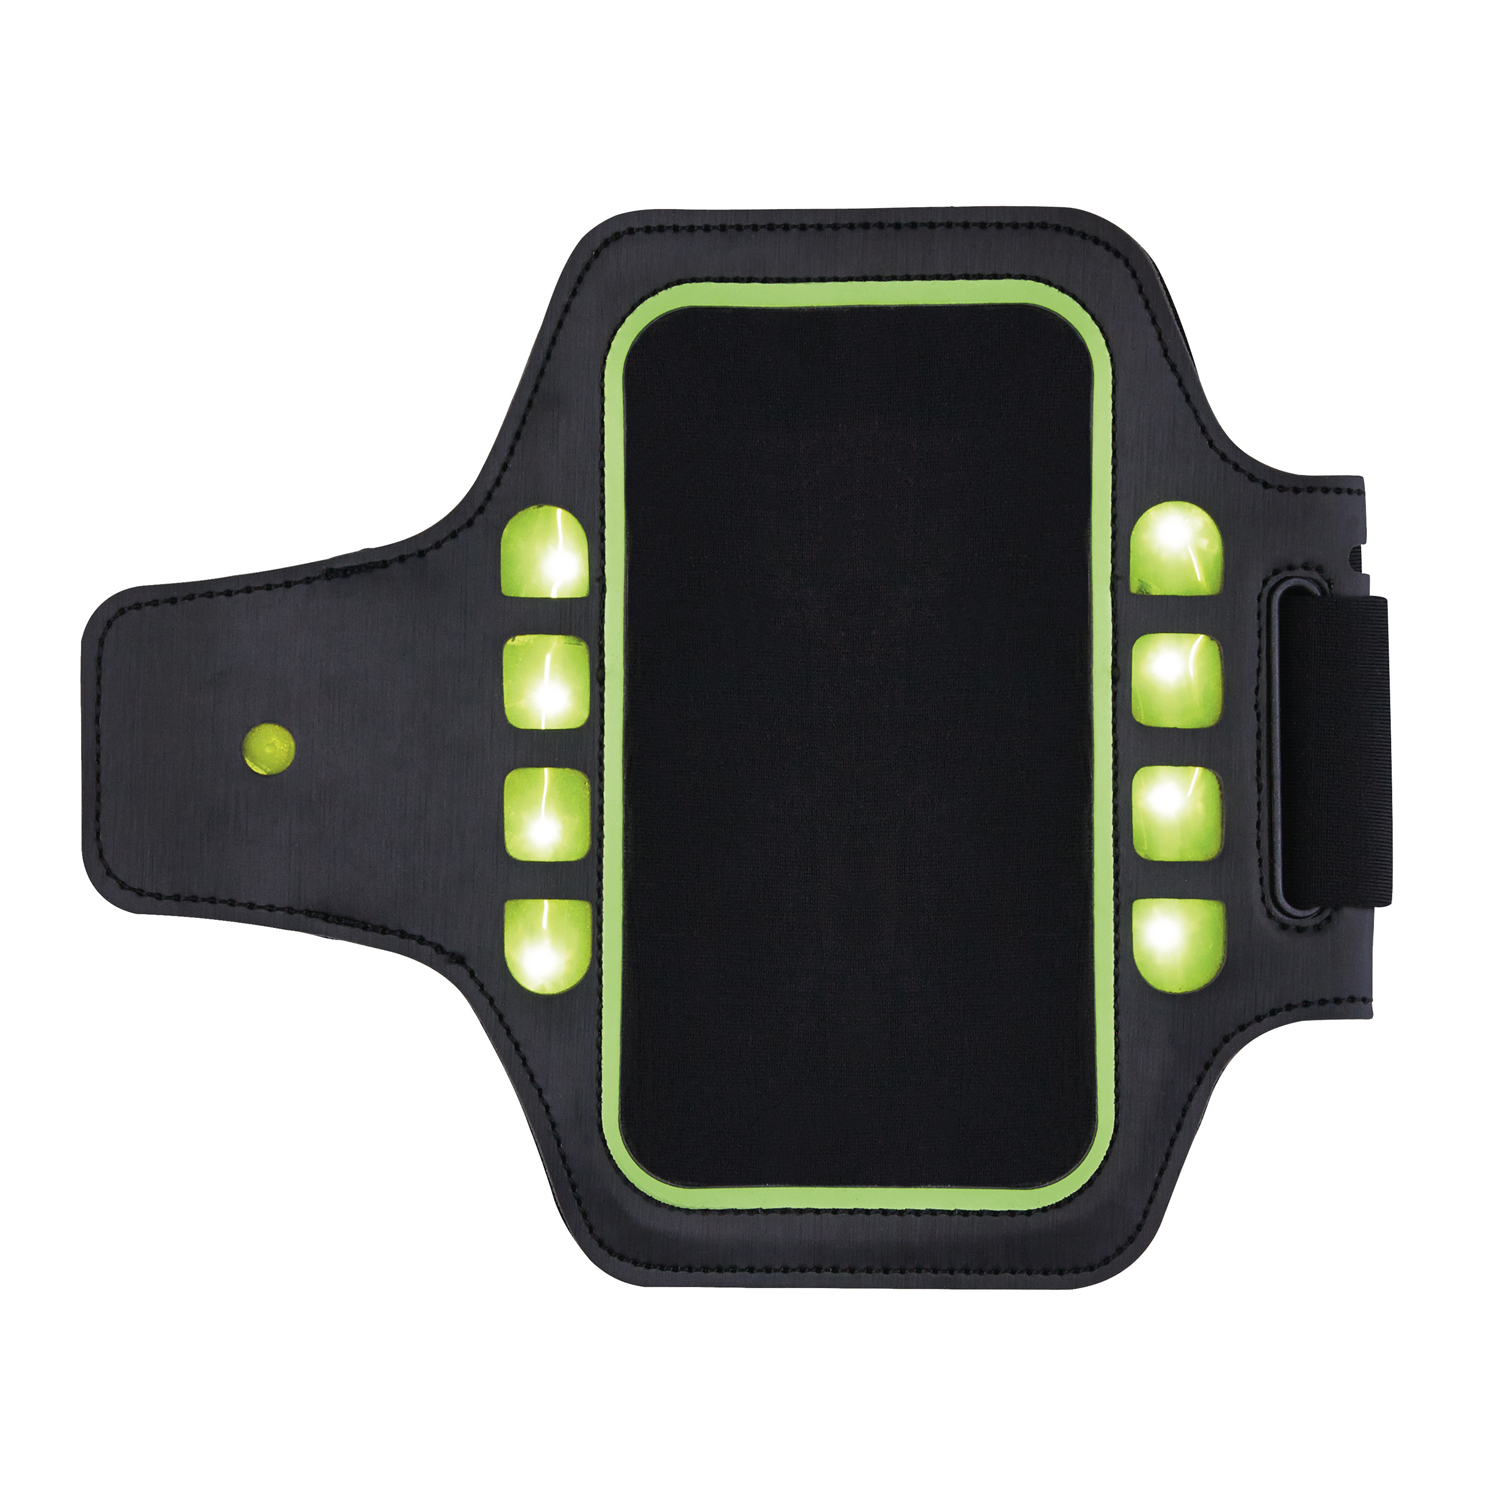 Спортивный чехол для телефона на руку с LED подсветкой